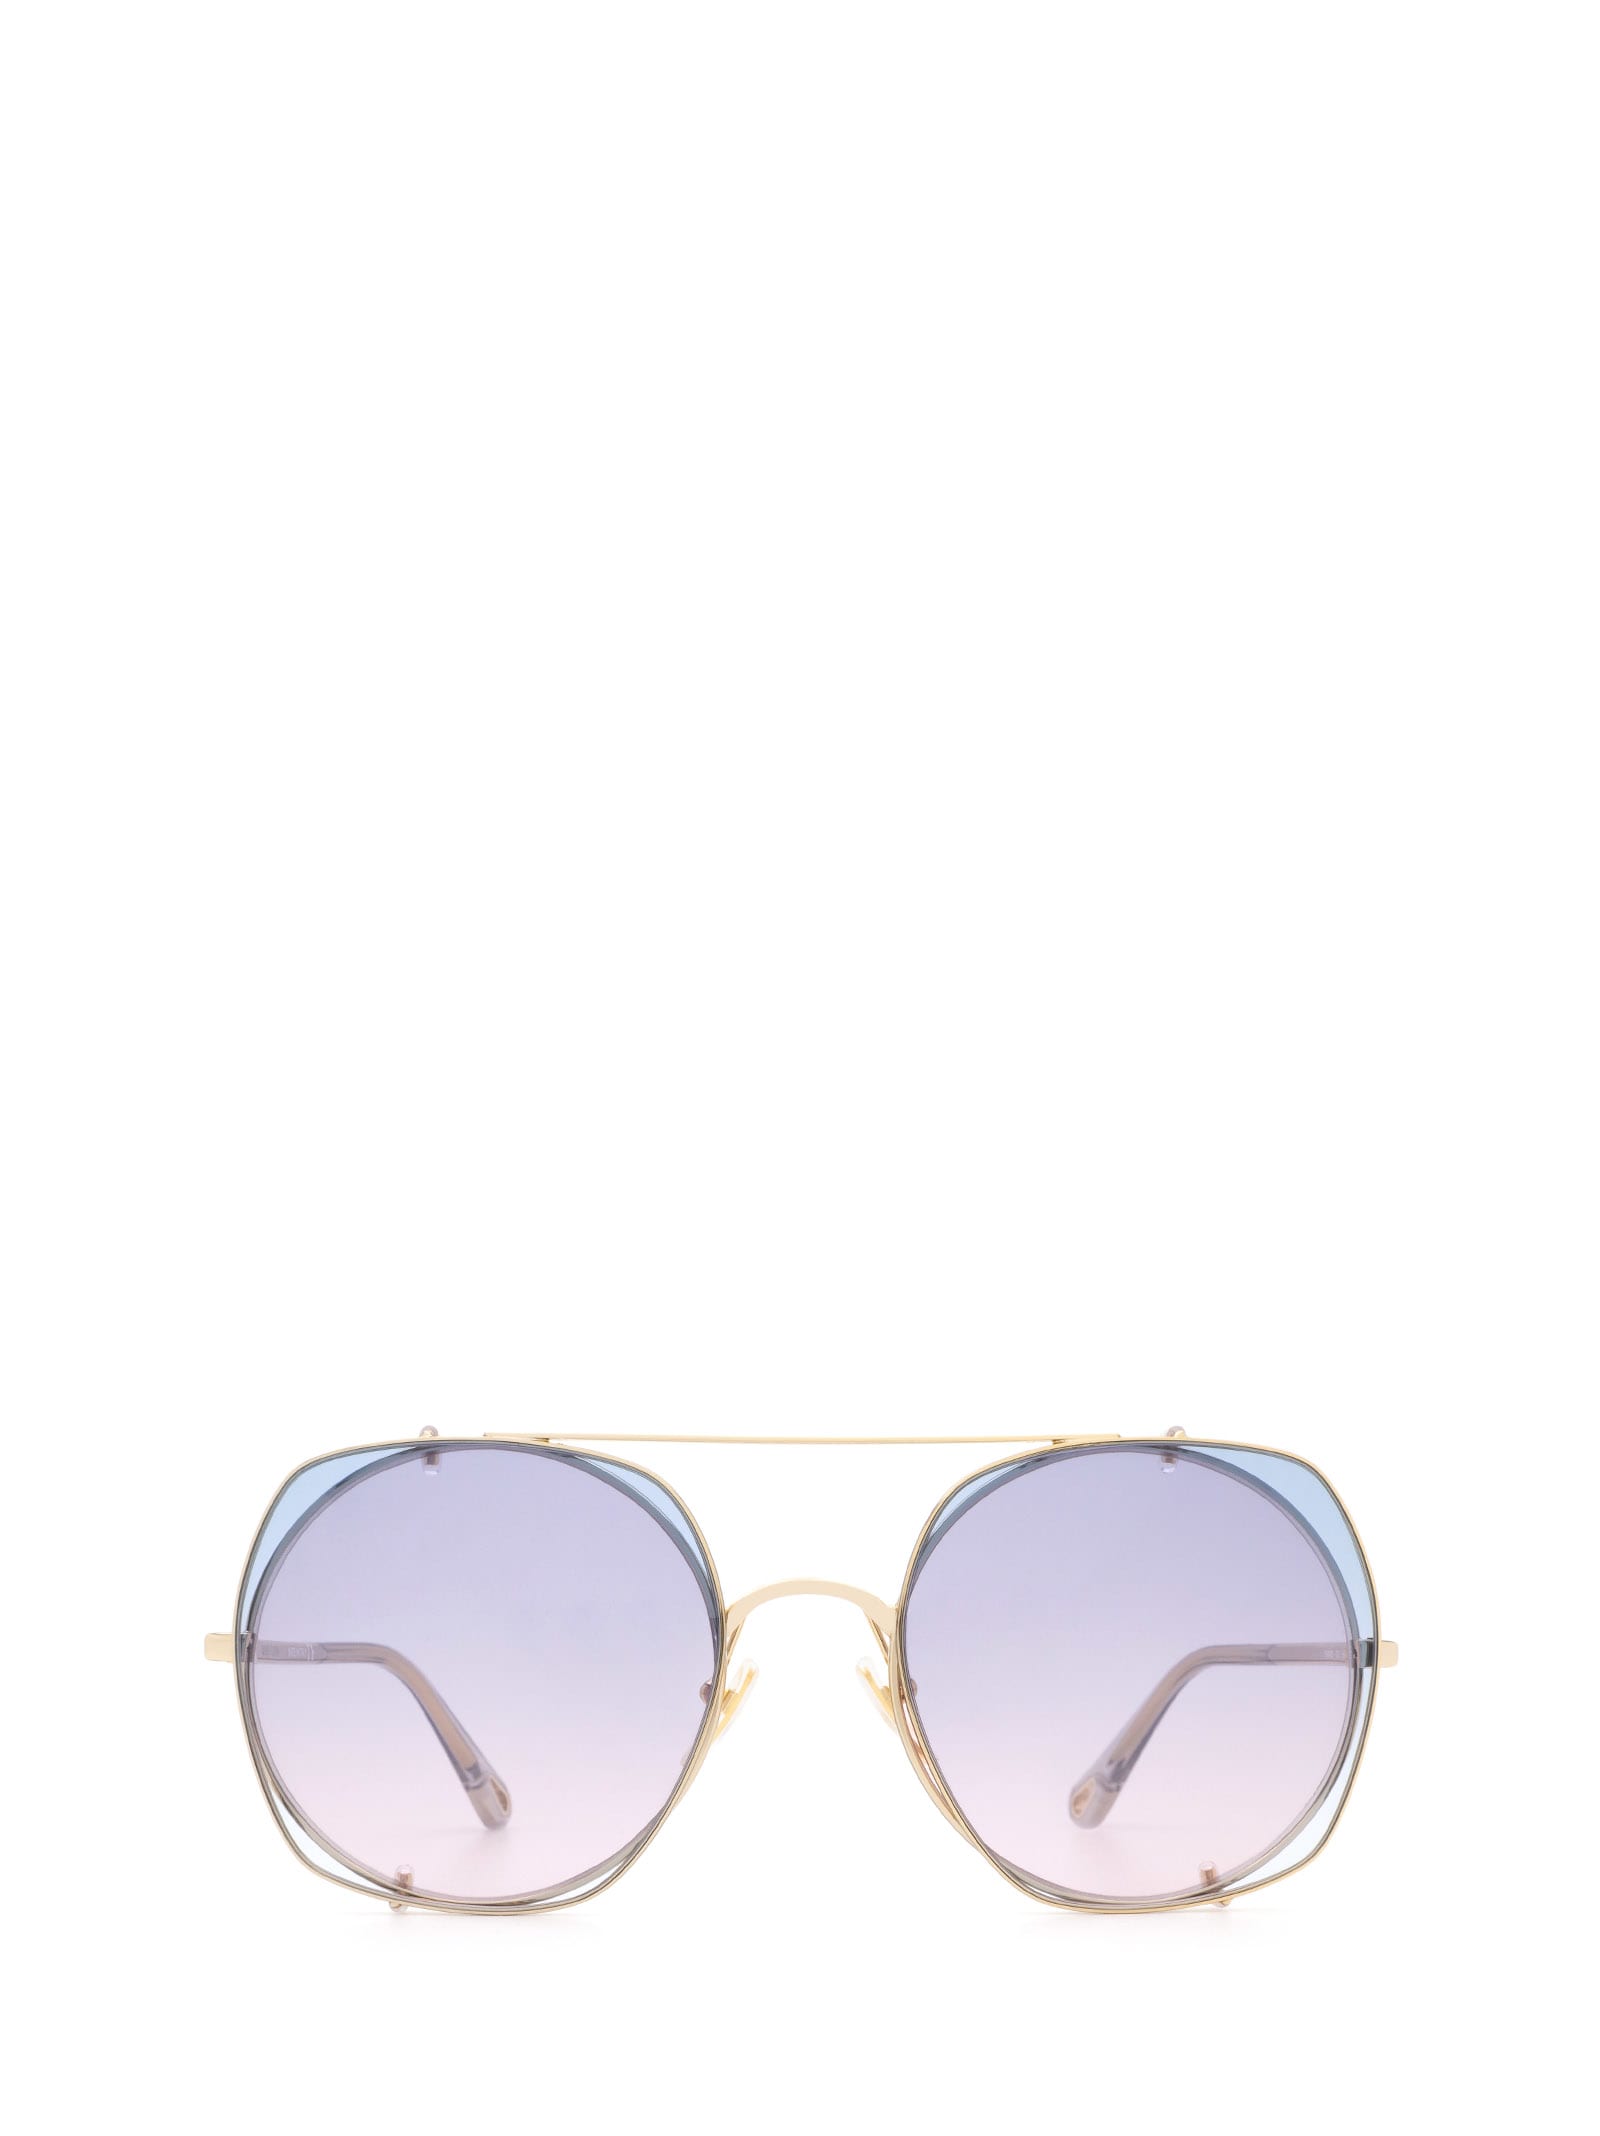 CHLOÉ Sunglasses | ModeSens